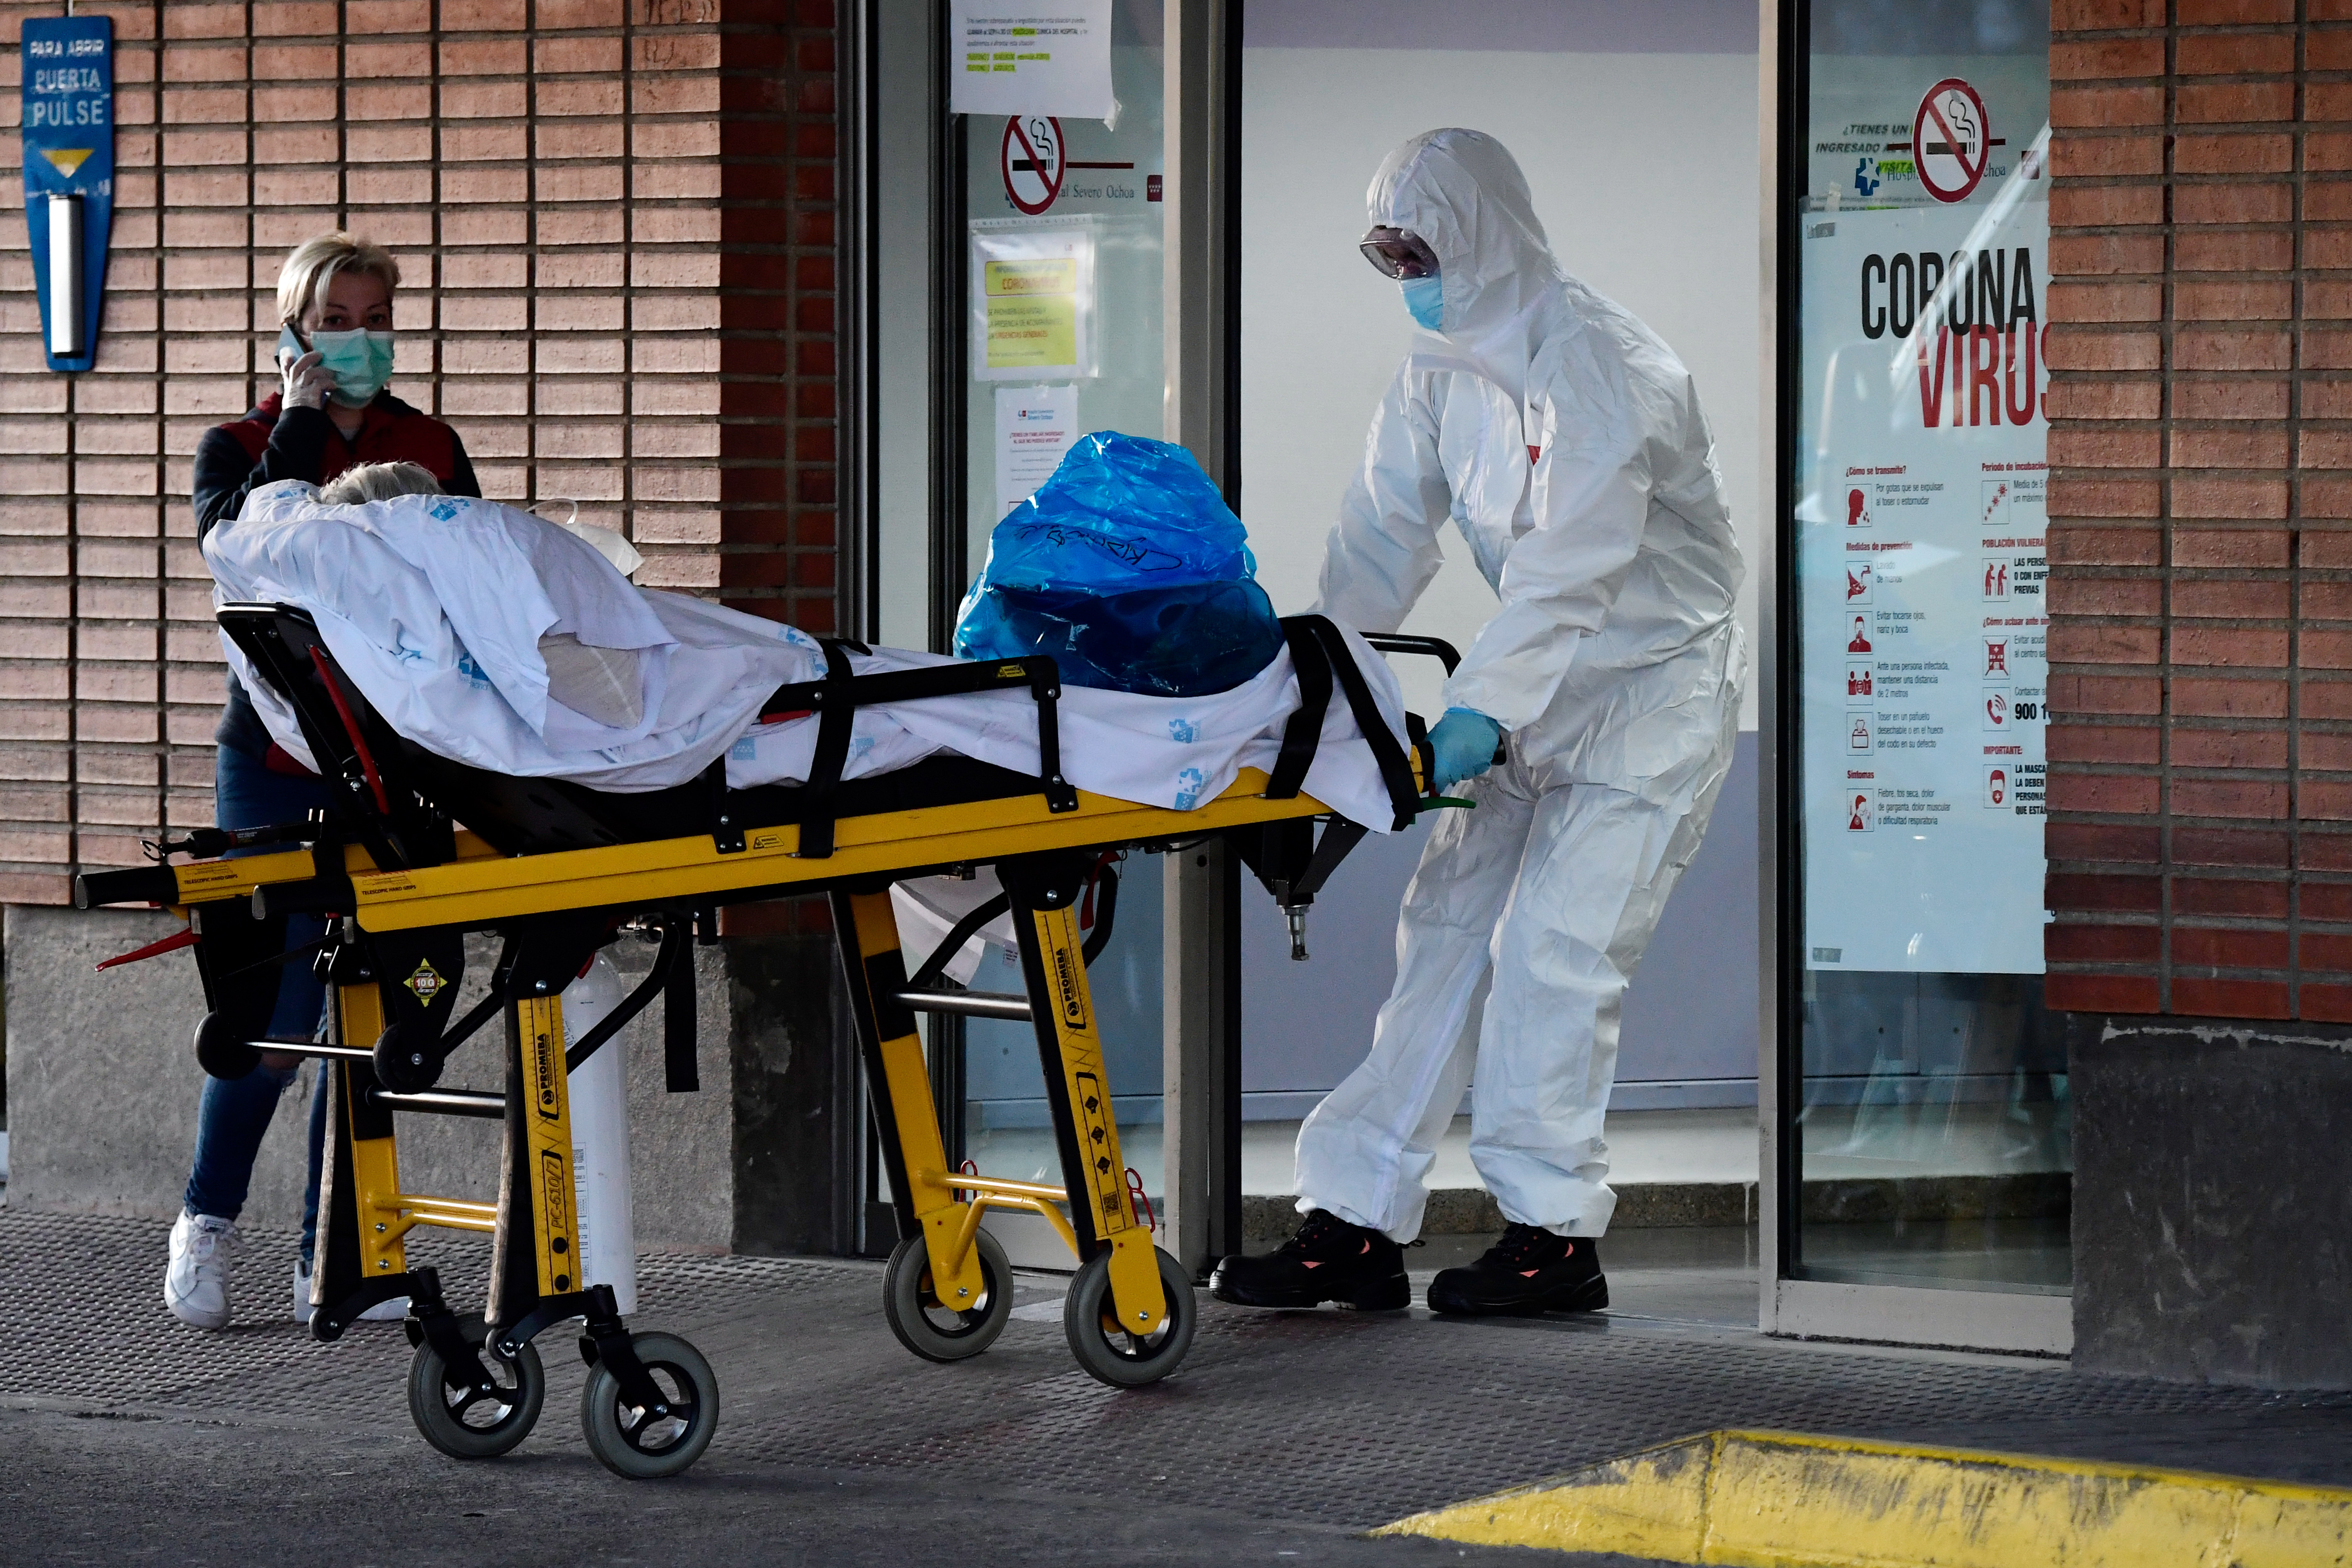 España: El segundo país con más muertes por coronavirus en el mundo